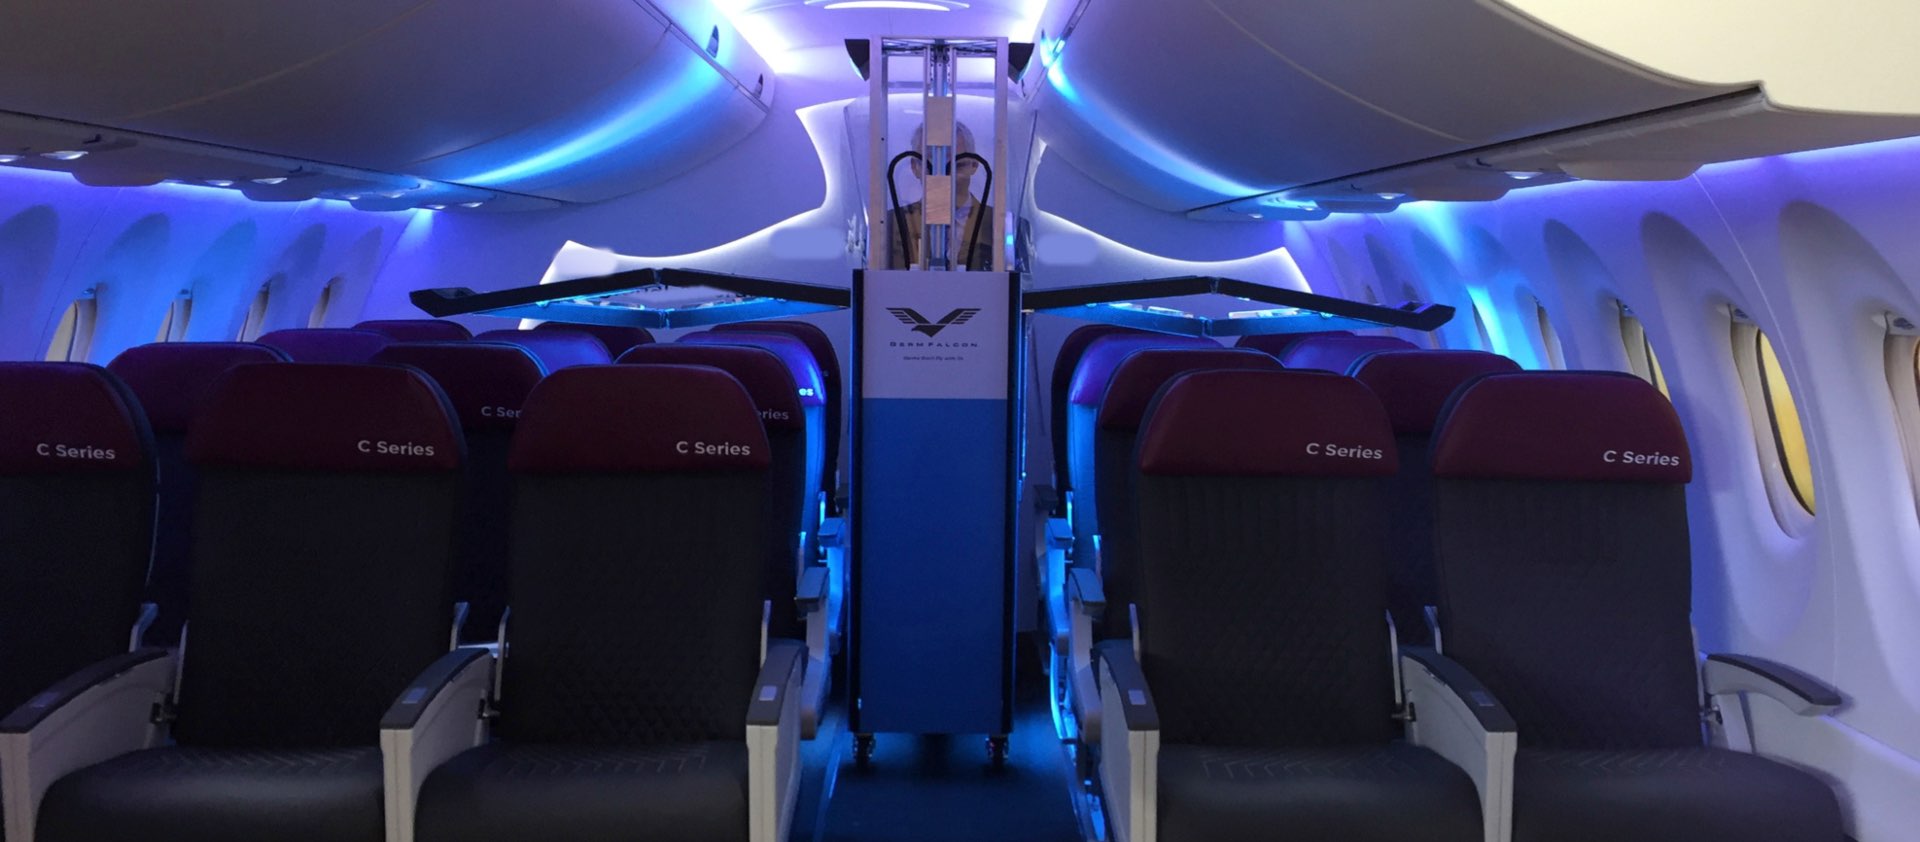 Rayos UV para desinfectar una cabina de avión.